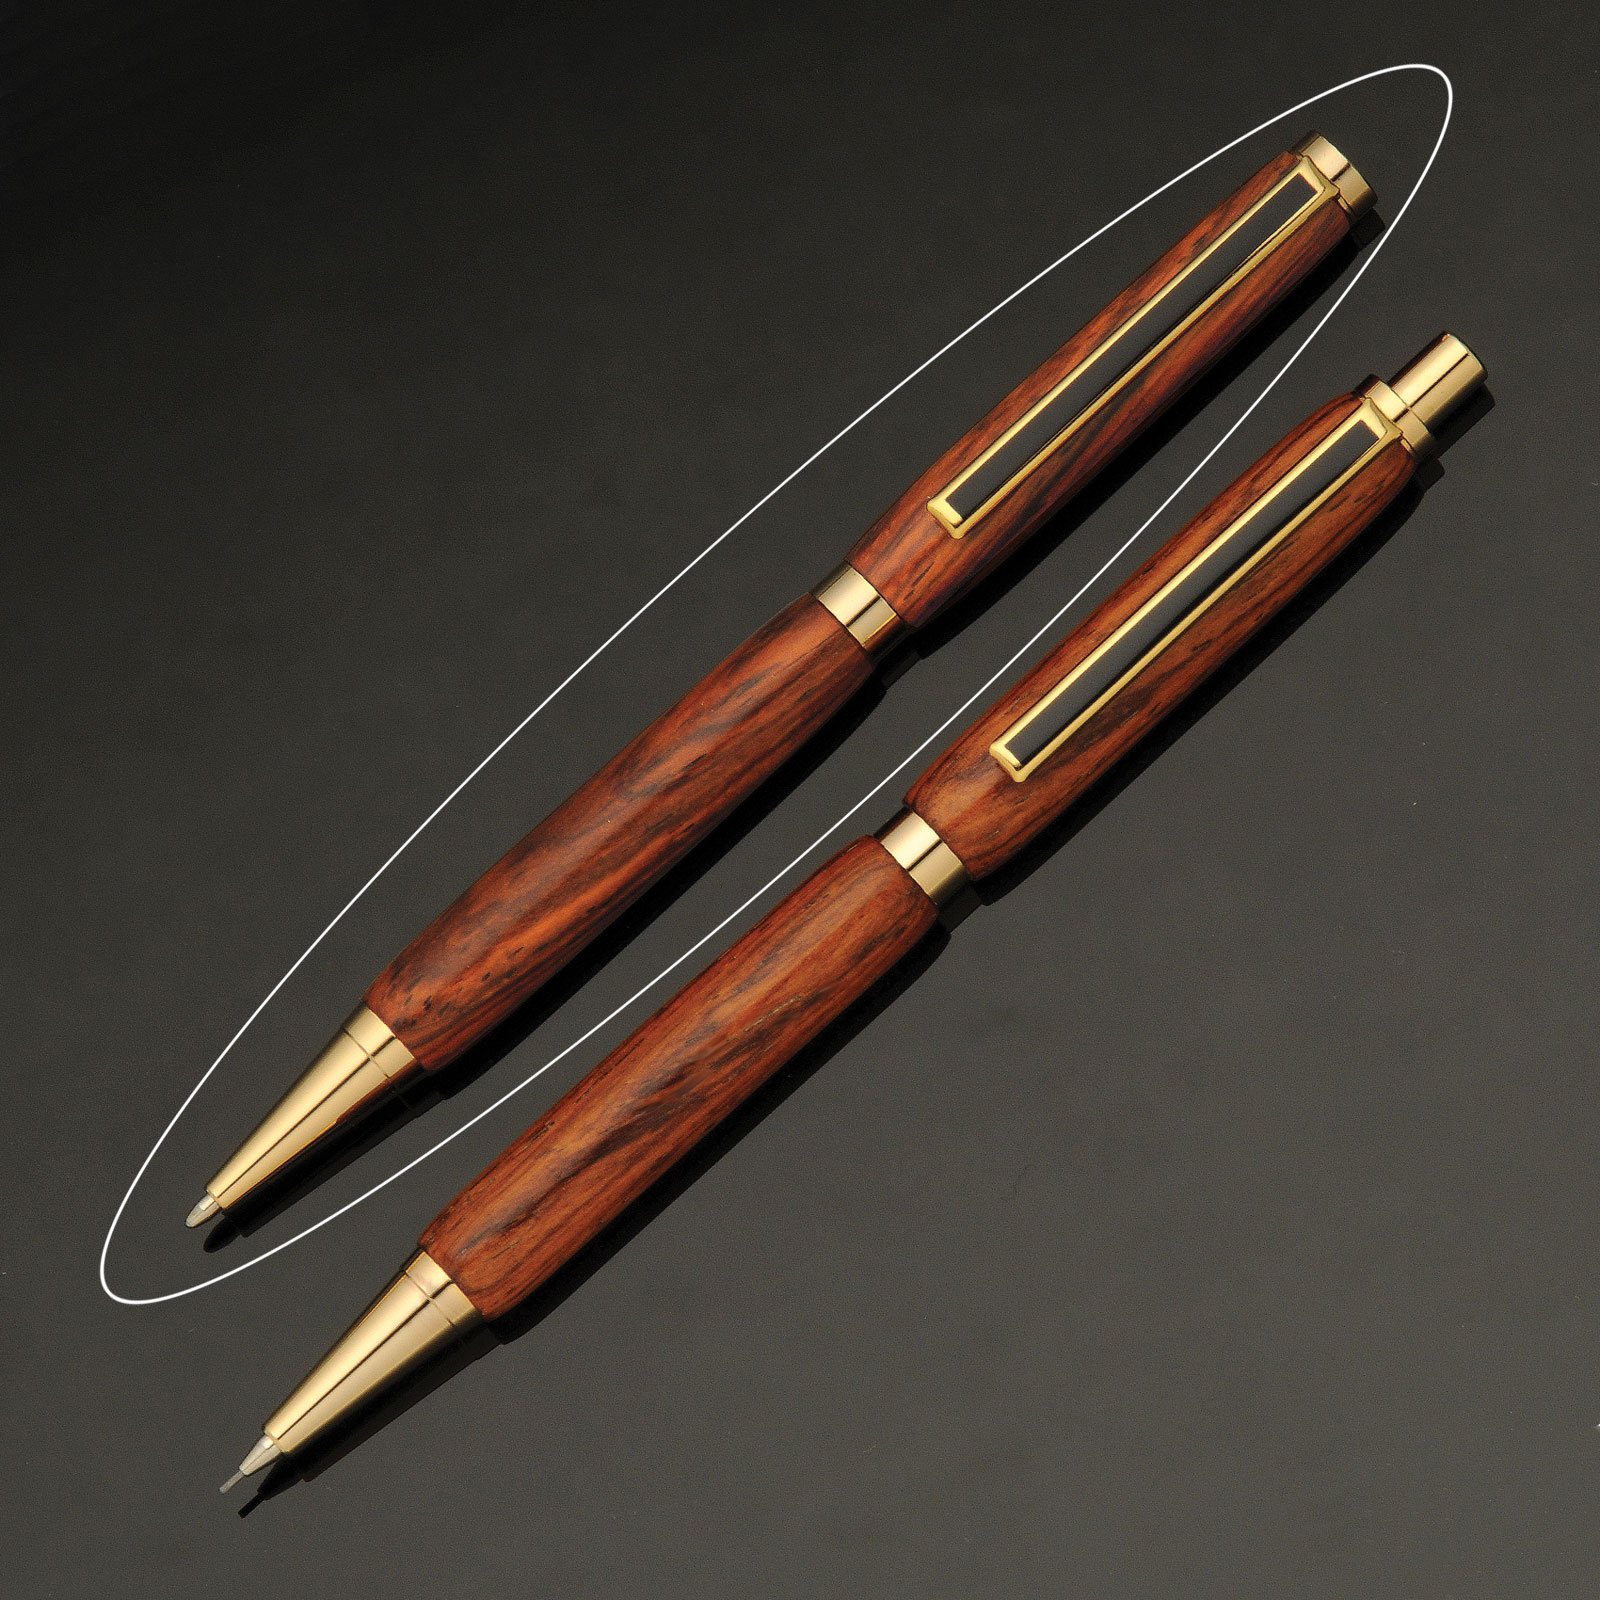 Father's day twist pen lathe pen hand made wood turned turned pen oak, walnut Slimline pens handcrafted pen gift wood pen